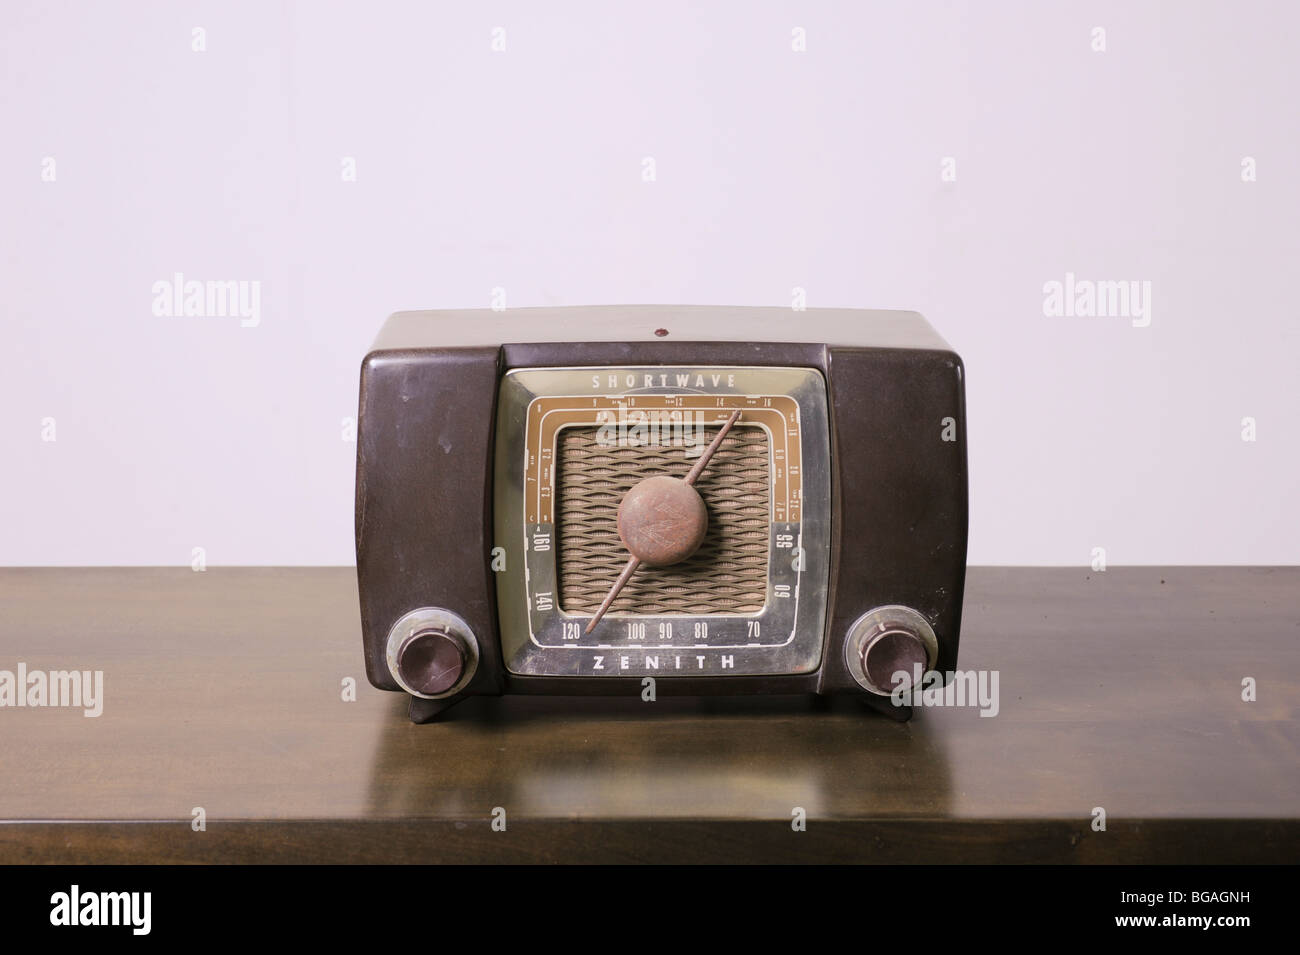 Cutout of a retro Zenith transistor radio receiver on white background Stock Photo